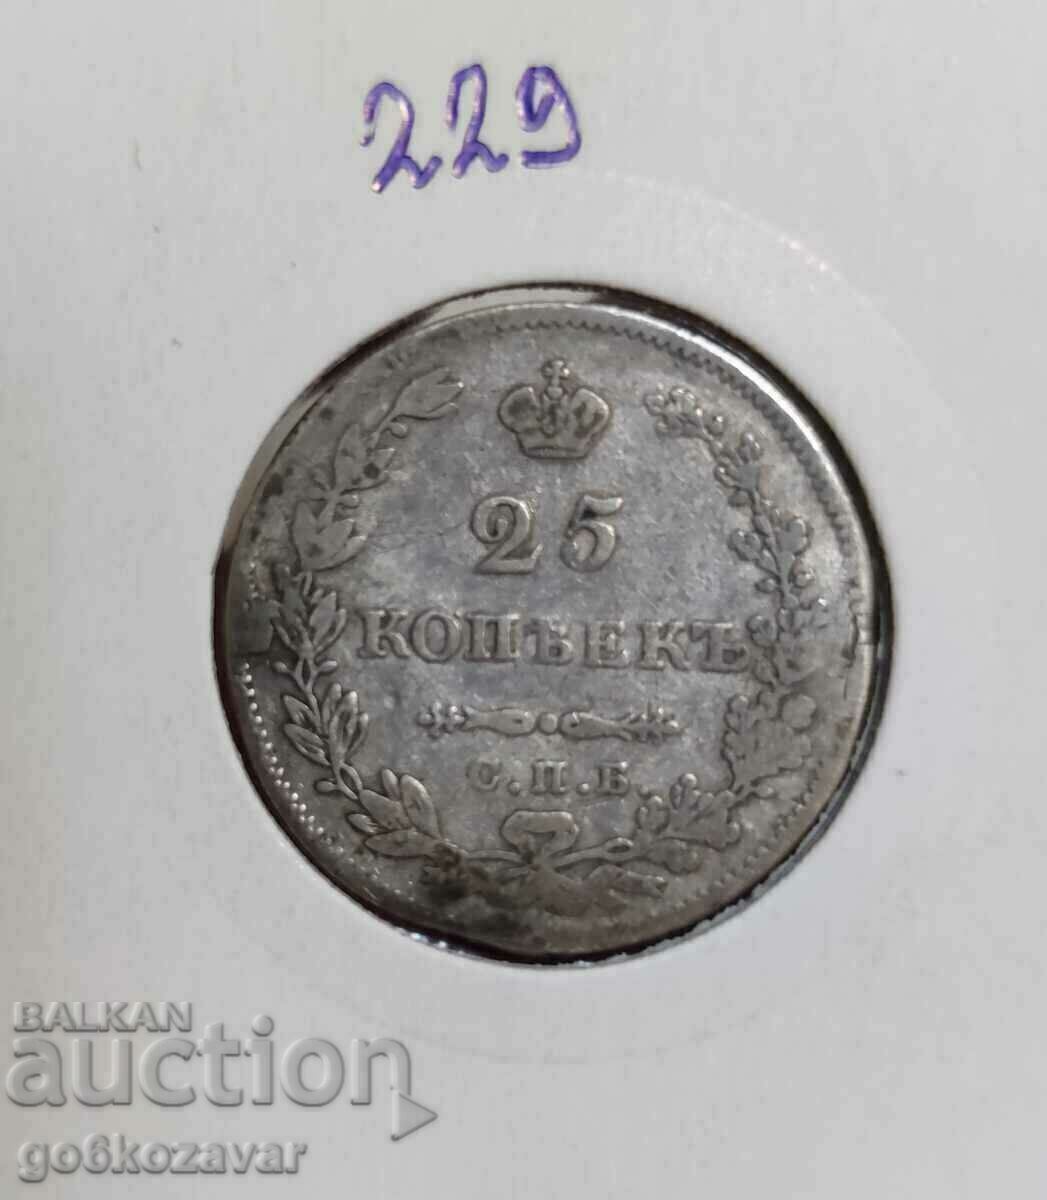 Russia 25 kopecks 1827 Silver! Rare!